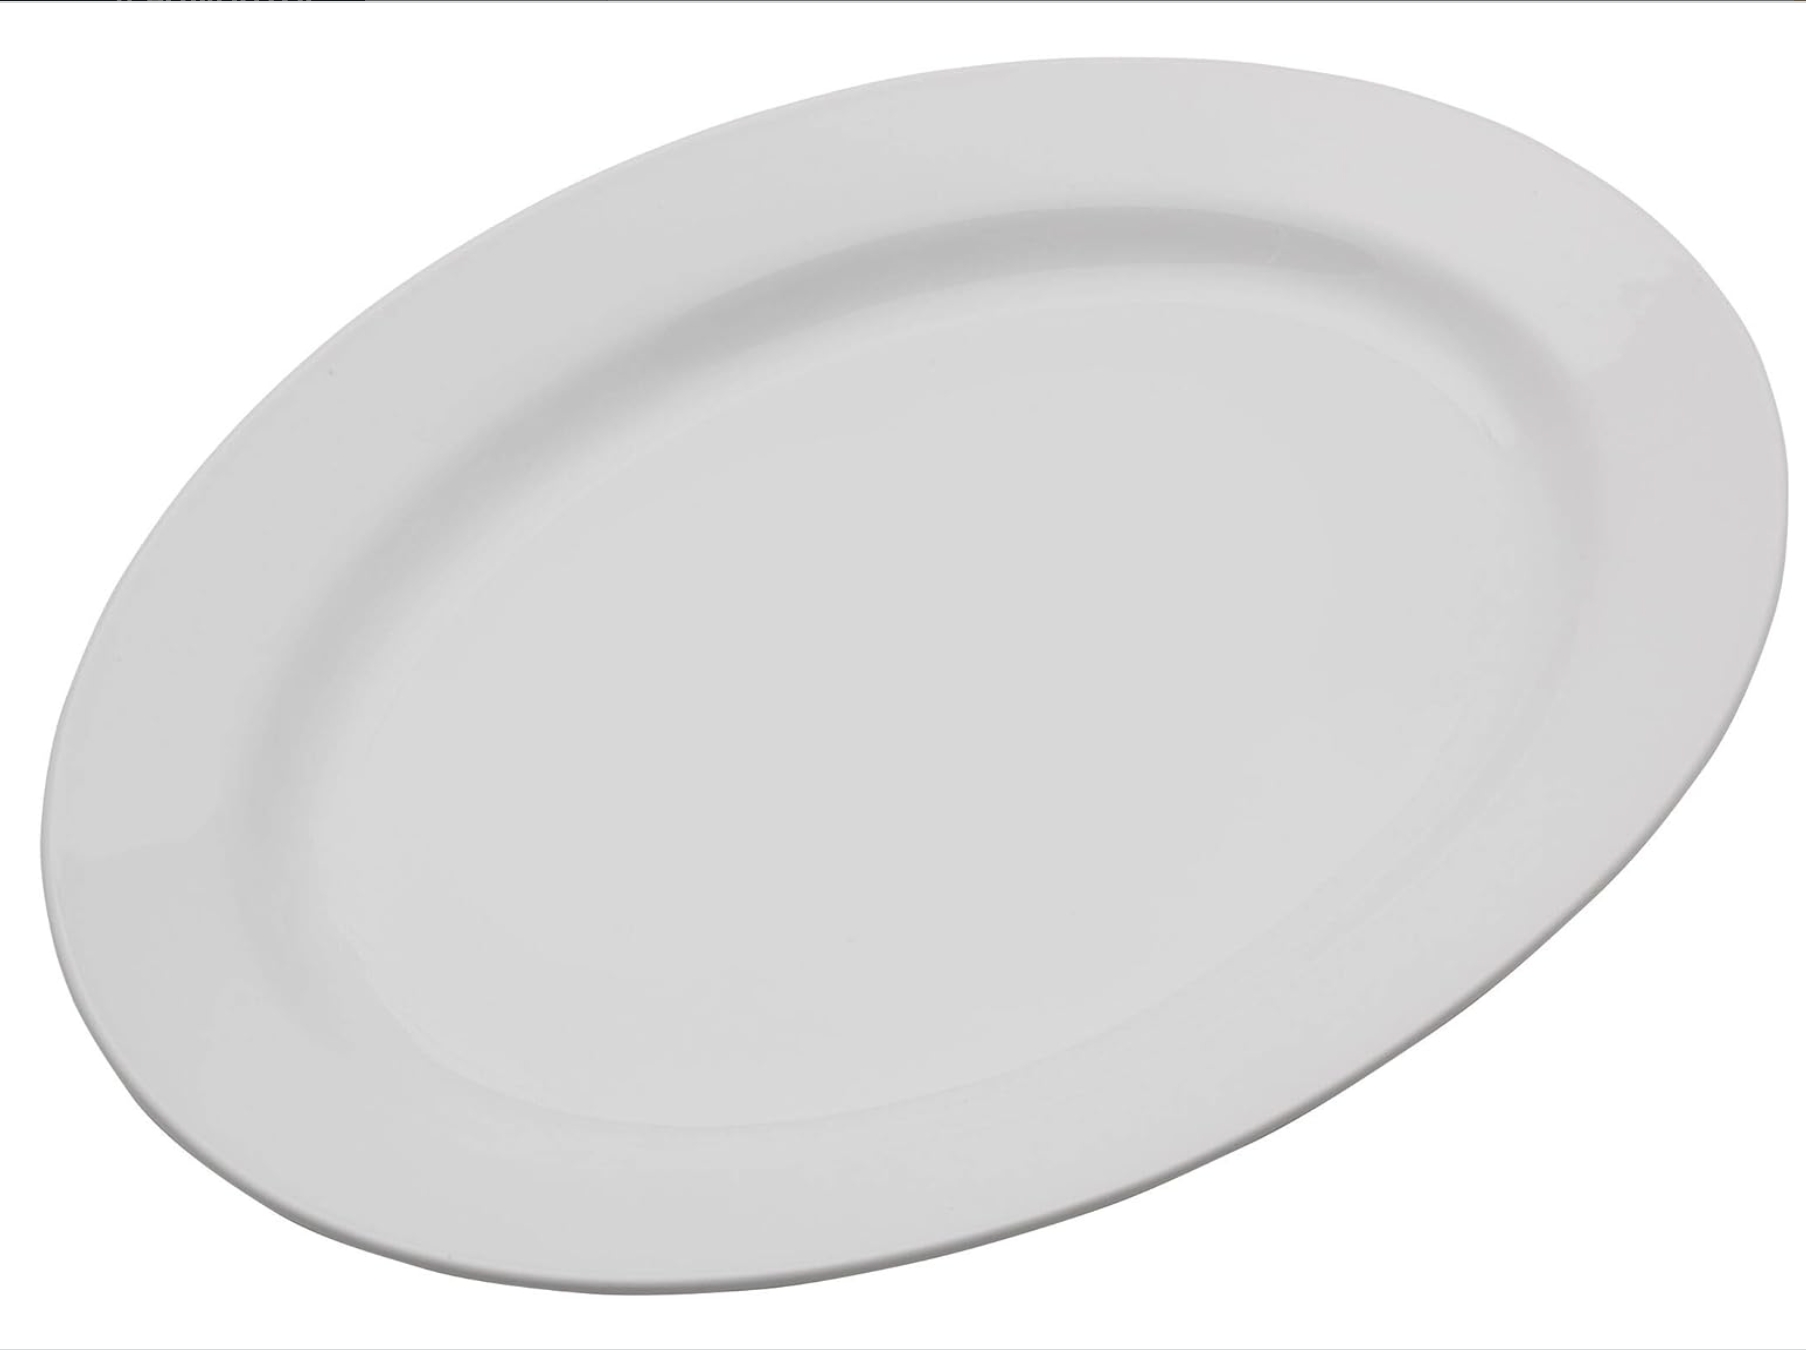 16" oval porcelain platter